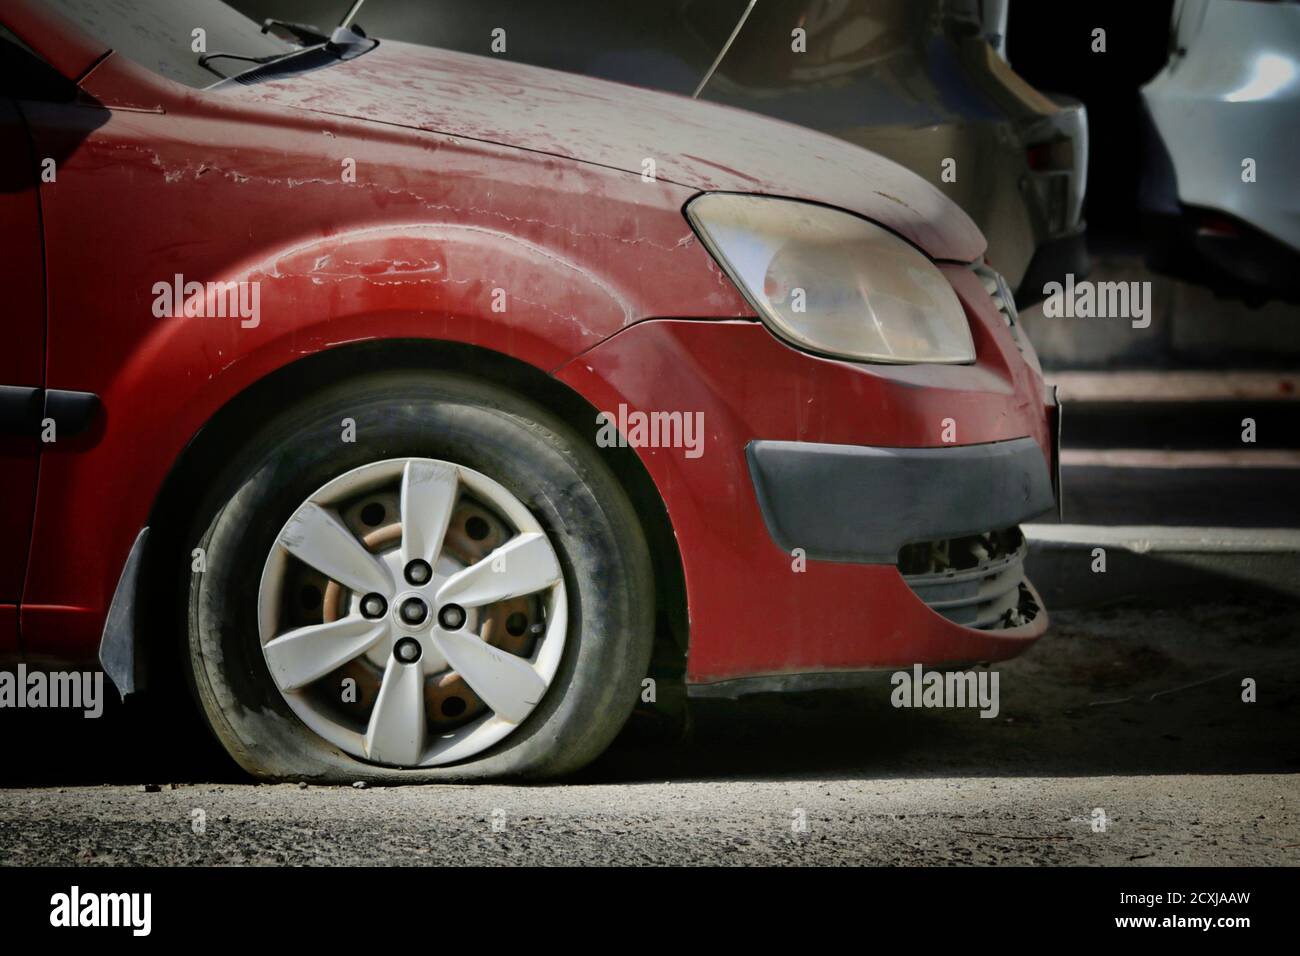 Vista di uno pneumatico della vettura forato. Il trie sgonfio è un problema comune con i veicoli e potrebbe causare incidenti Foto Stock